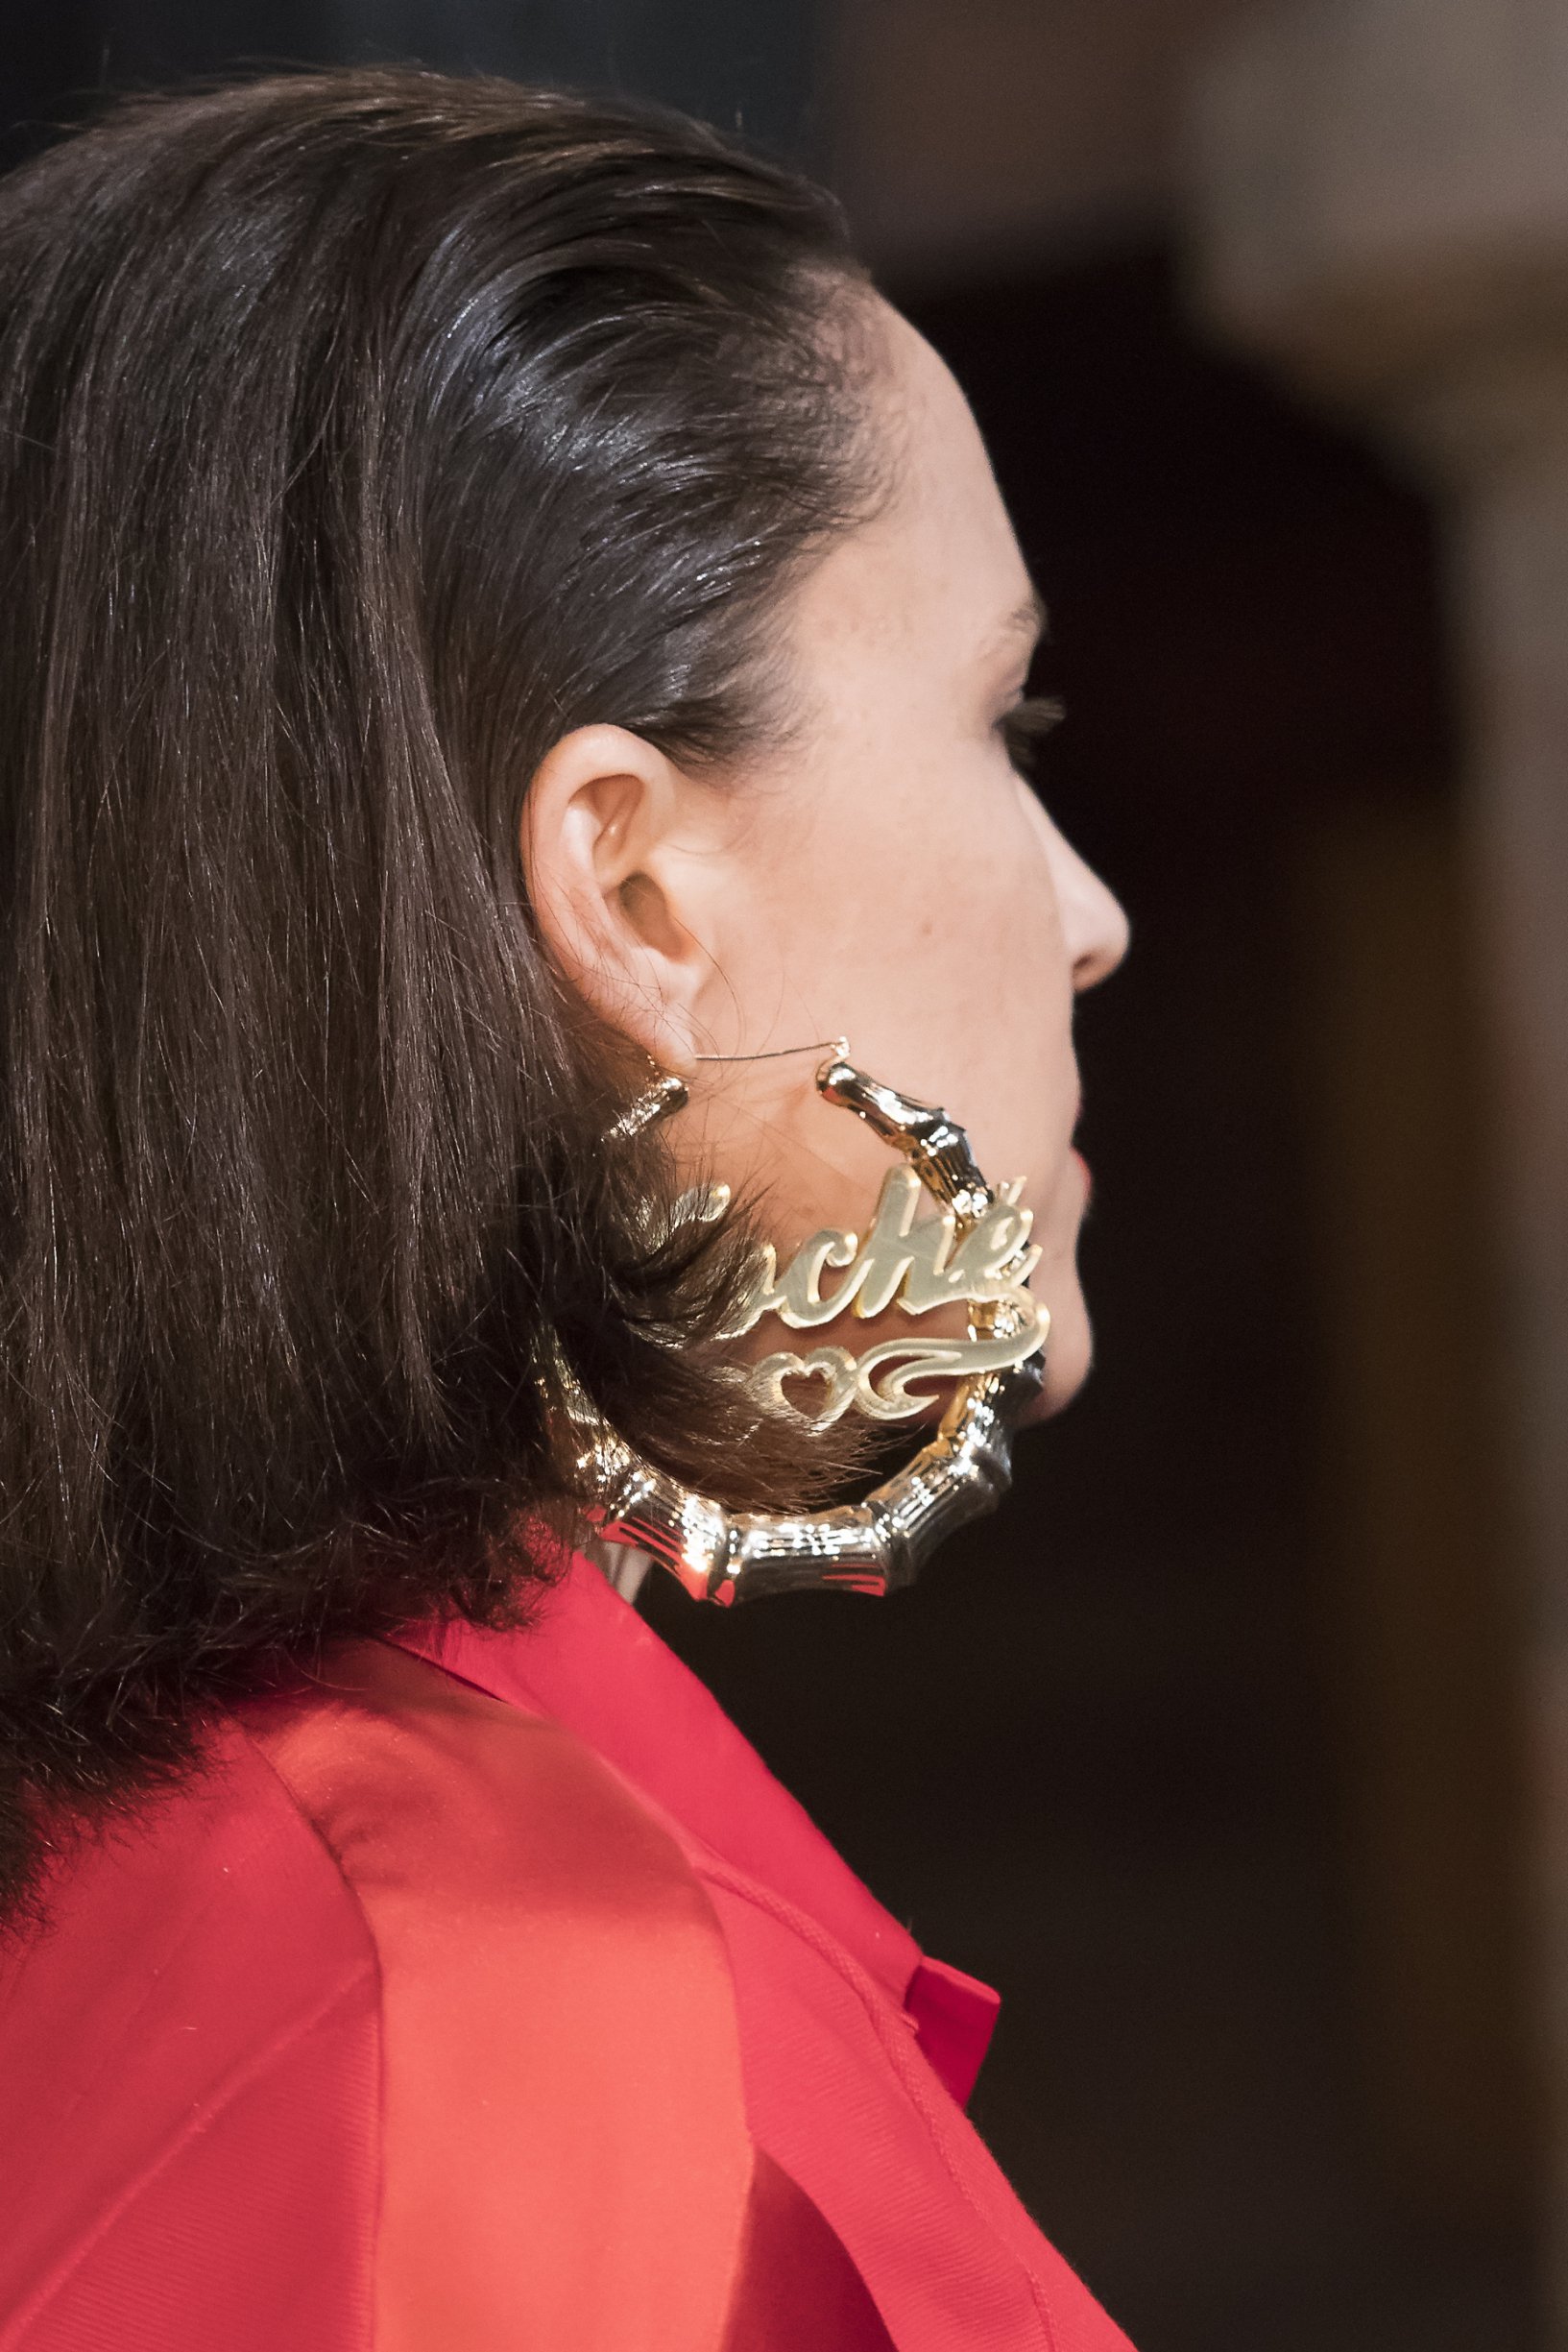 The earrings Koché